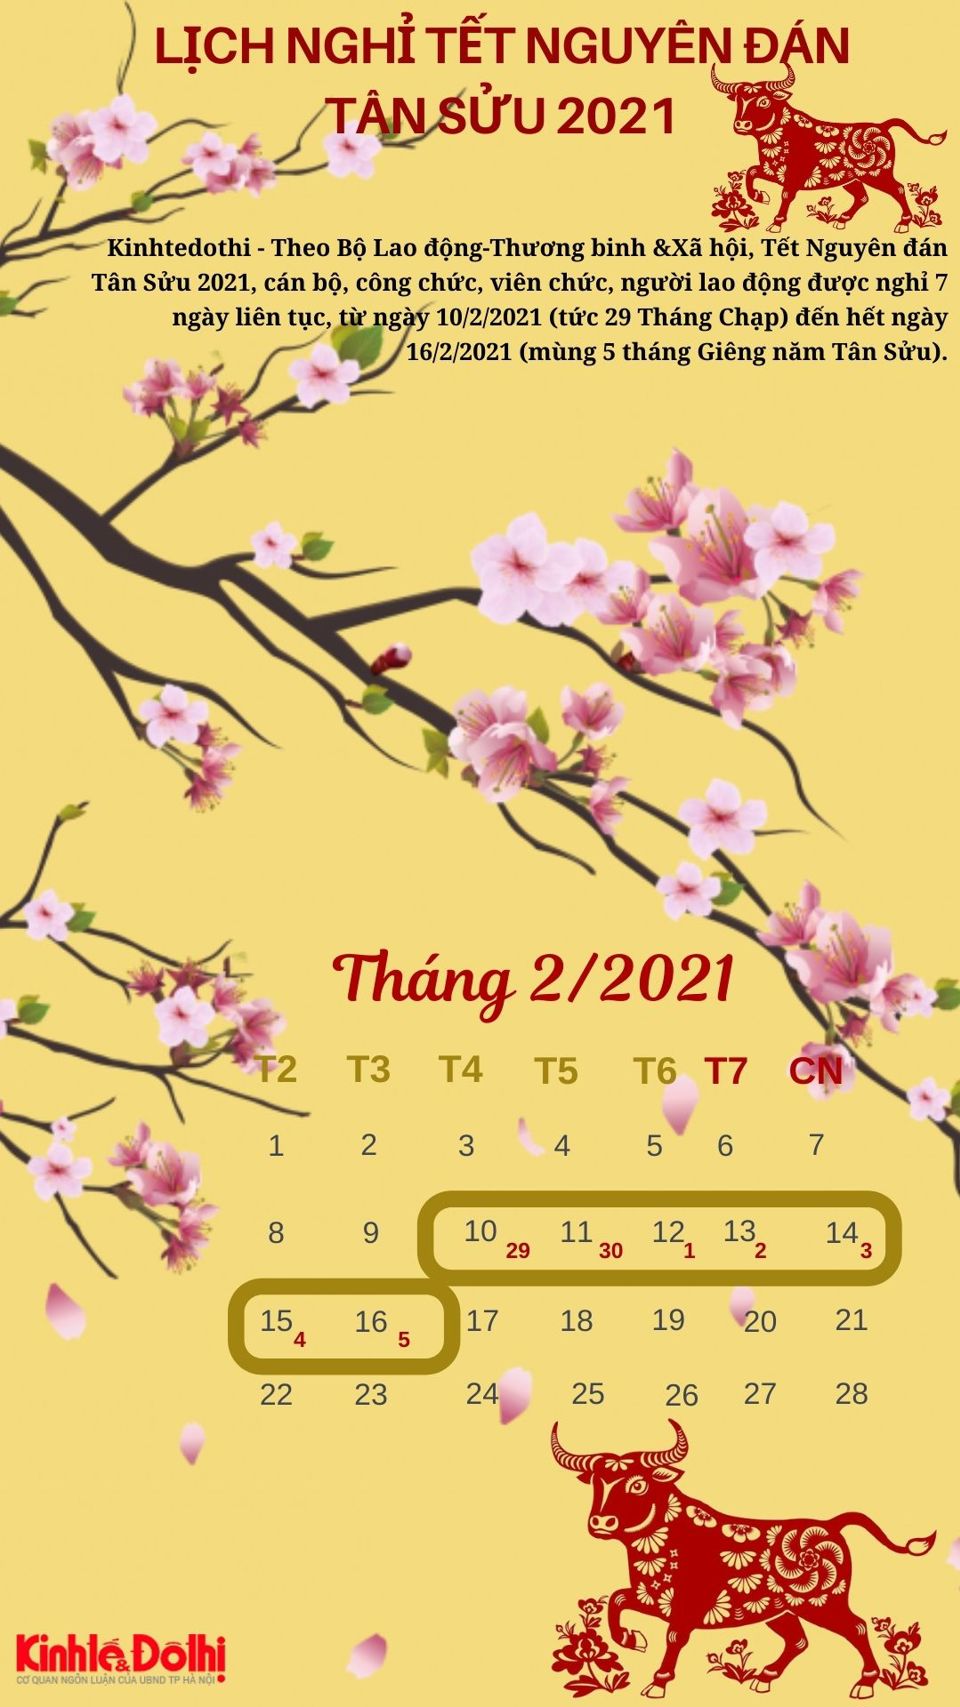 [Infographic] Chi tiết lịch nghỉ Tết Nguyên đán Tân Sửu 2021 - Ảnh 1